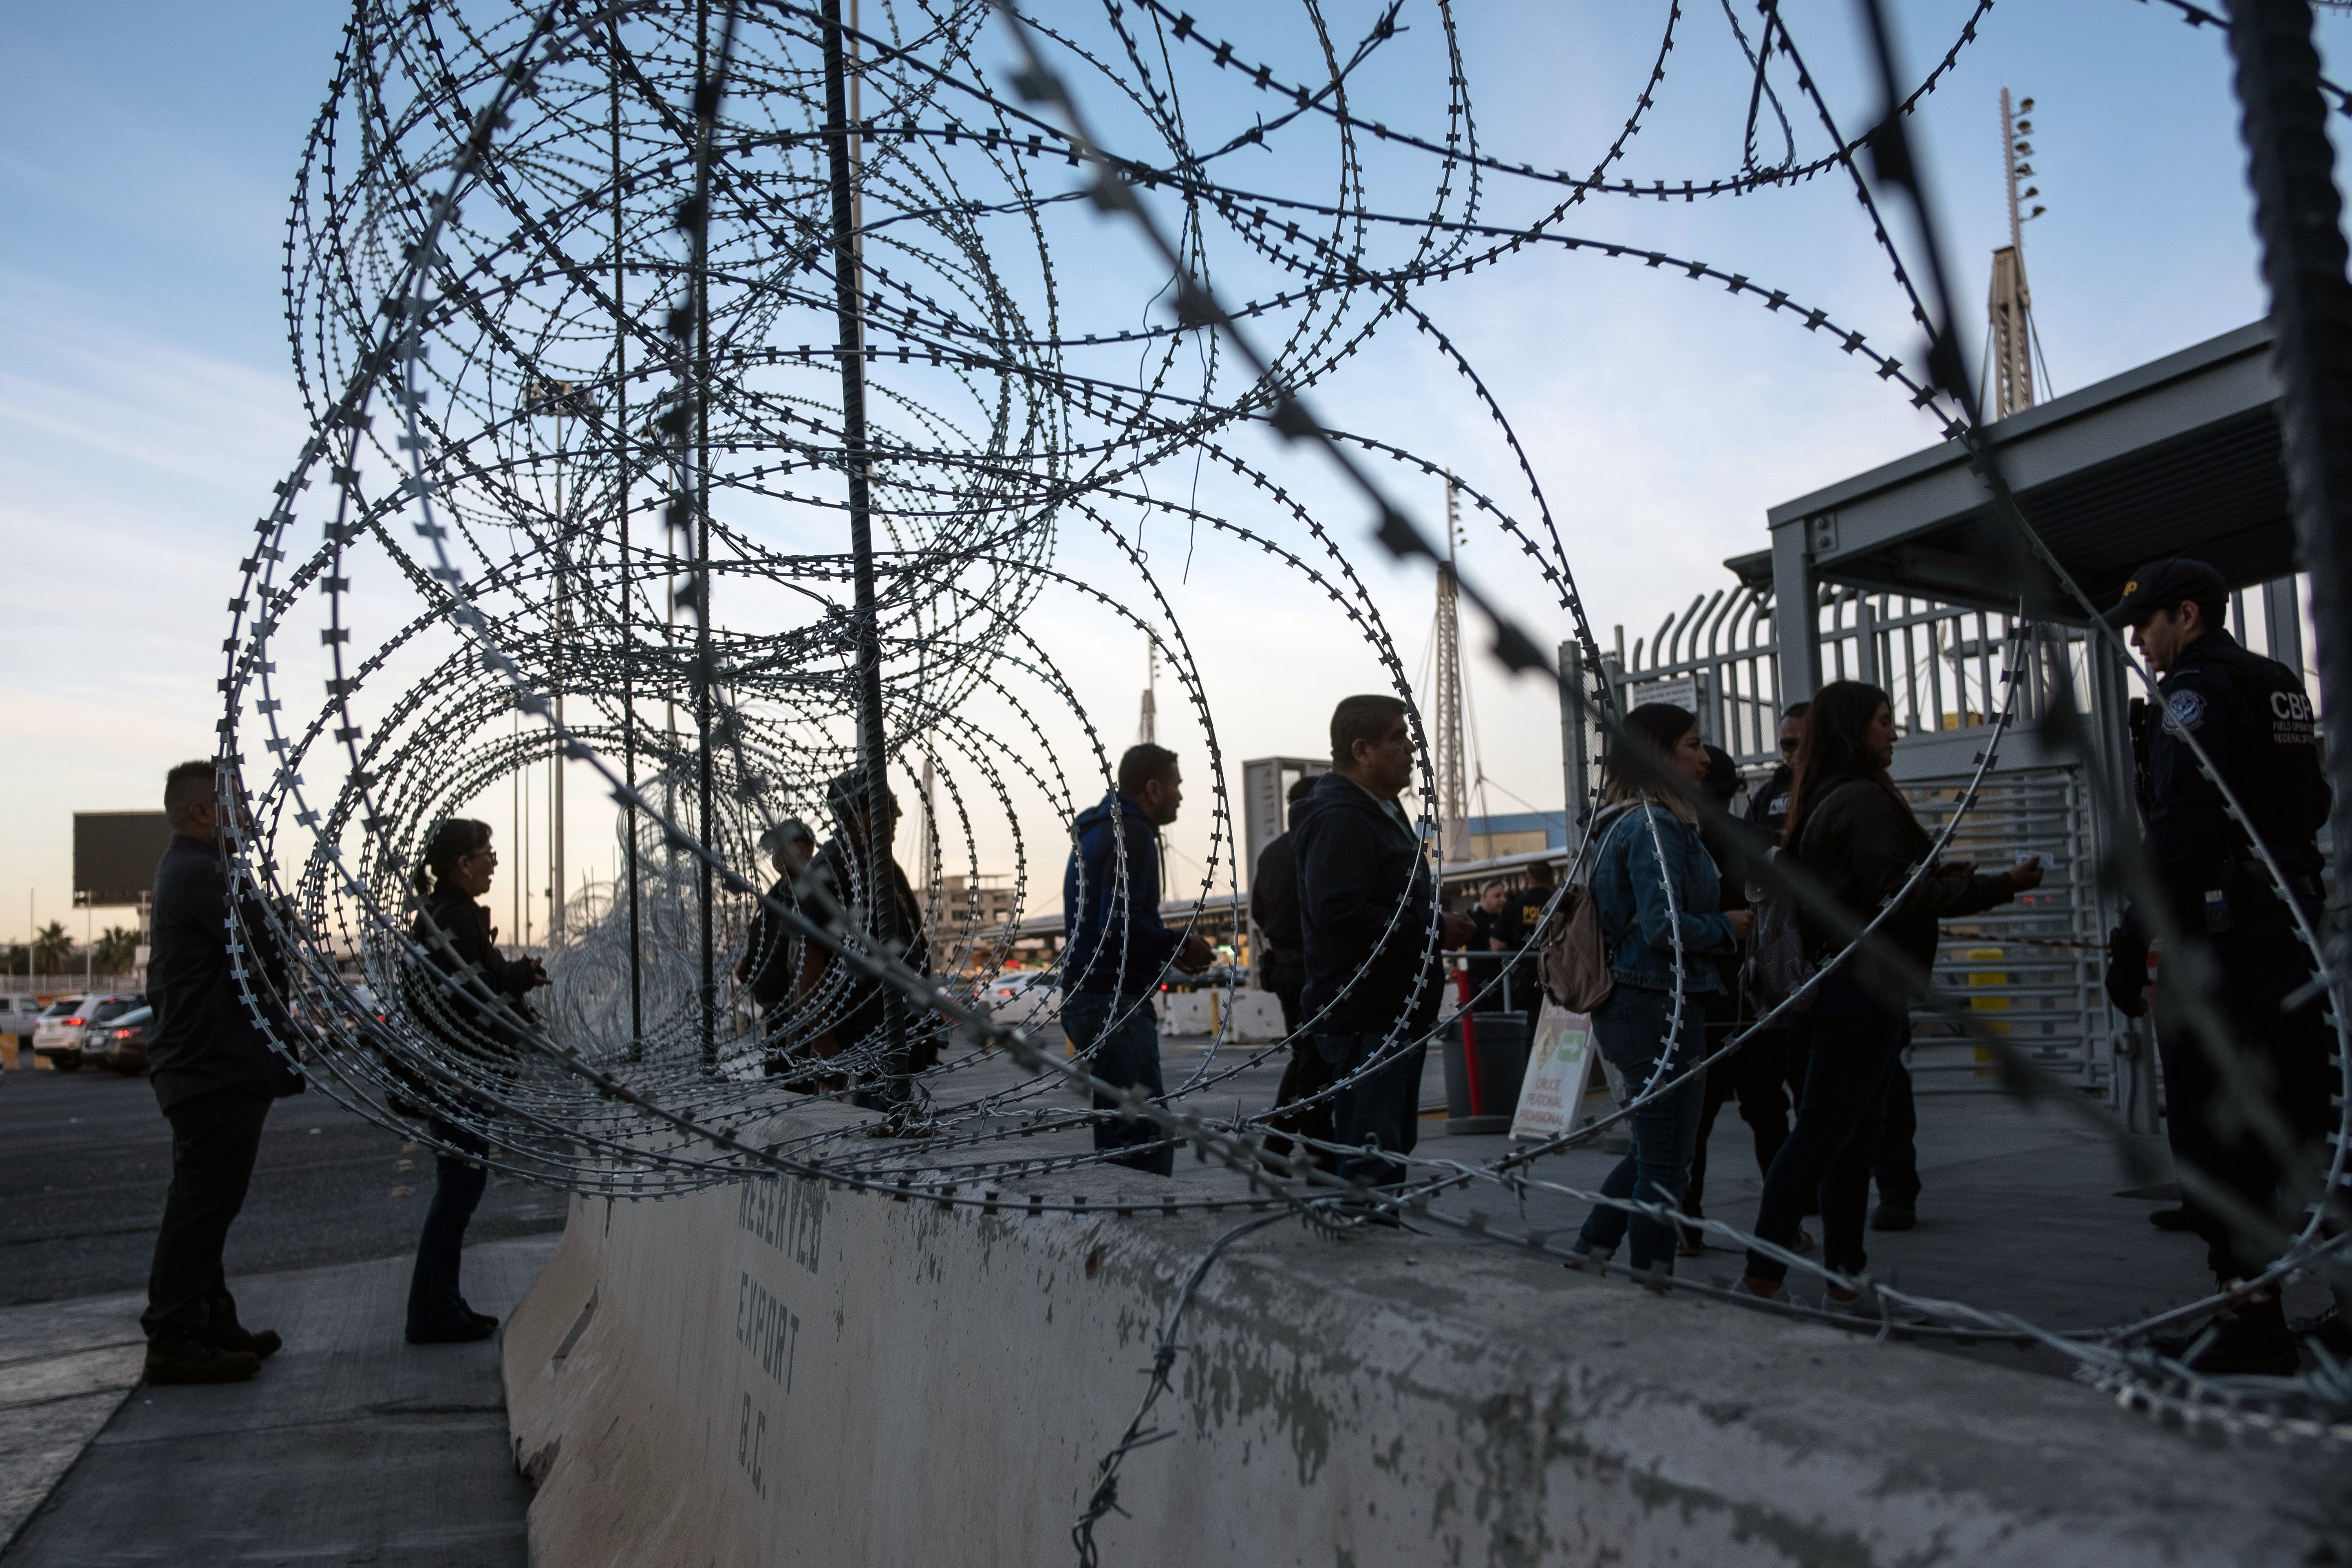 15 magyar próbált illegálisan beszökni az Egyesült Államokba